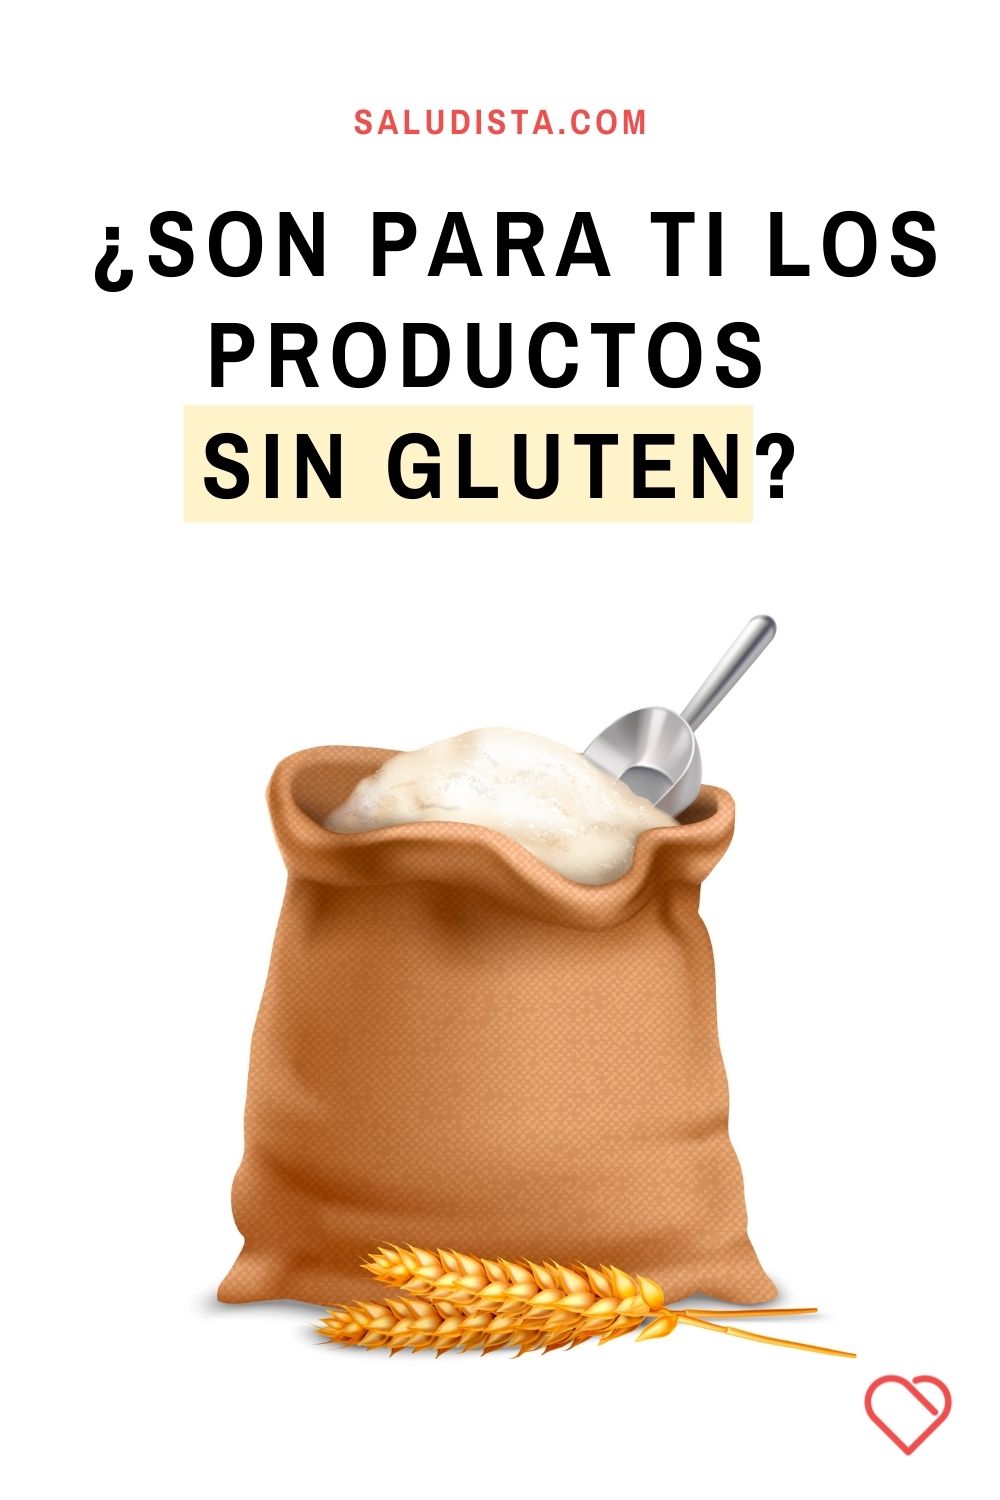 ¿Son los productos sin gluten para ti?